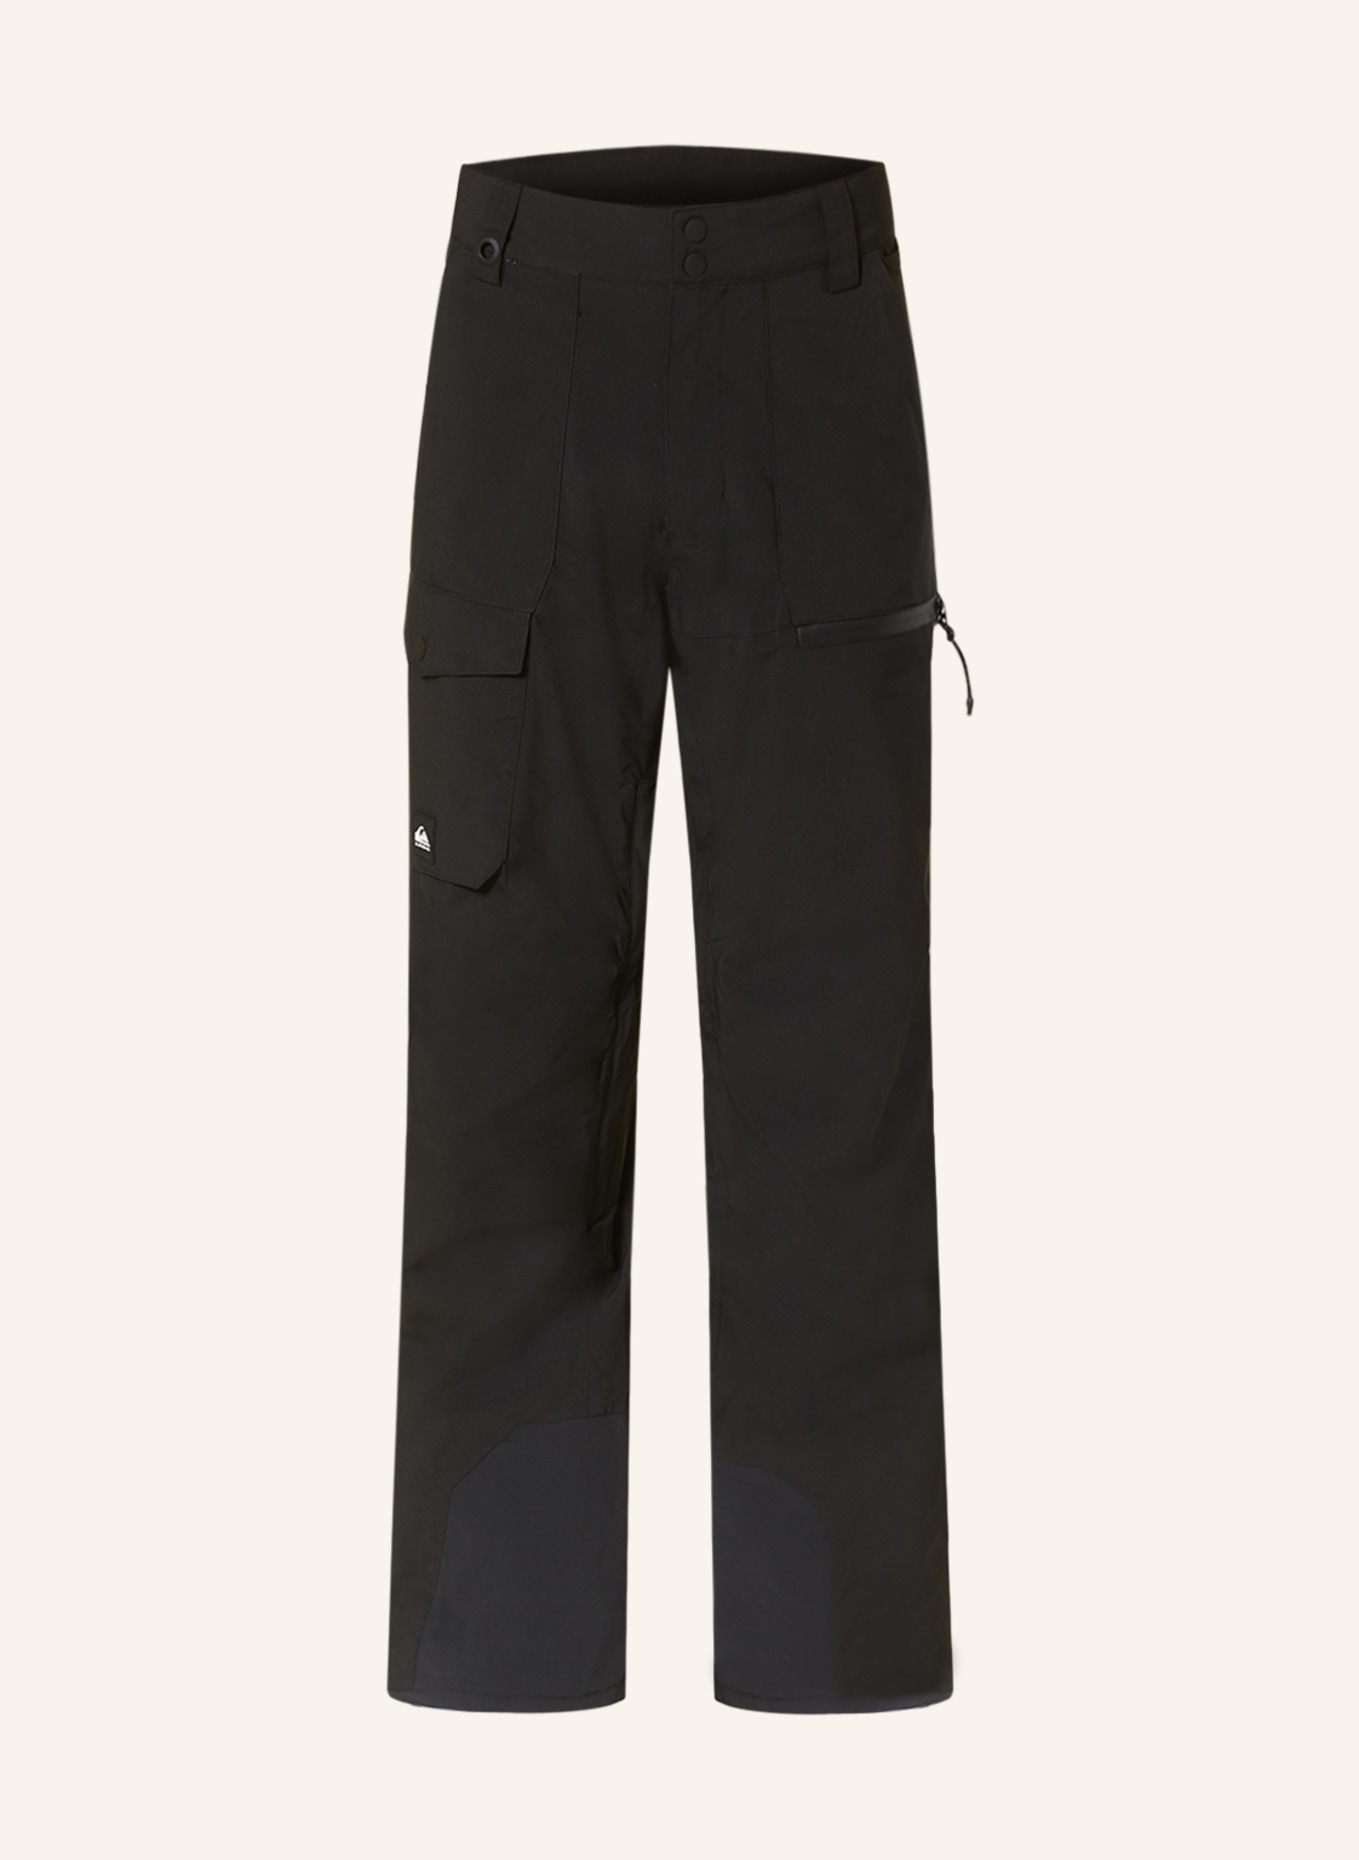 QUIKSILVER Ski pants UTILITY, Color: BLACK (Image 1)